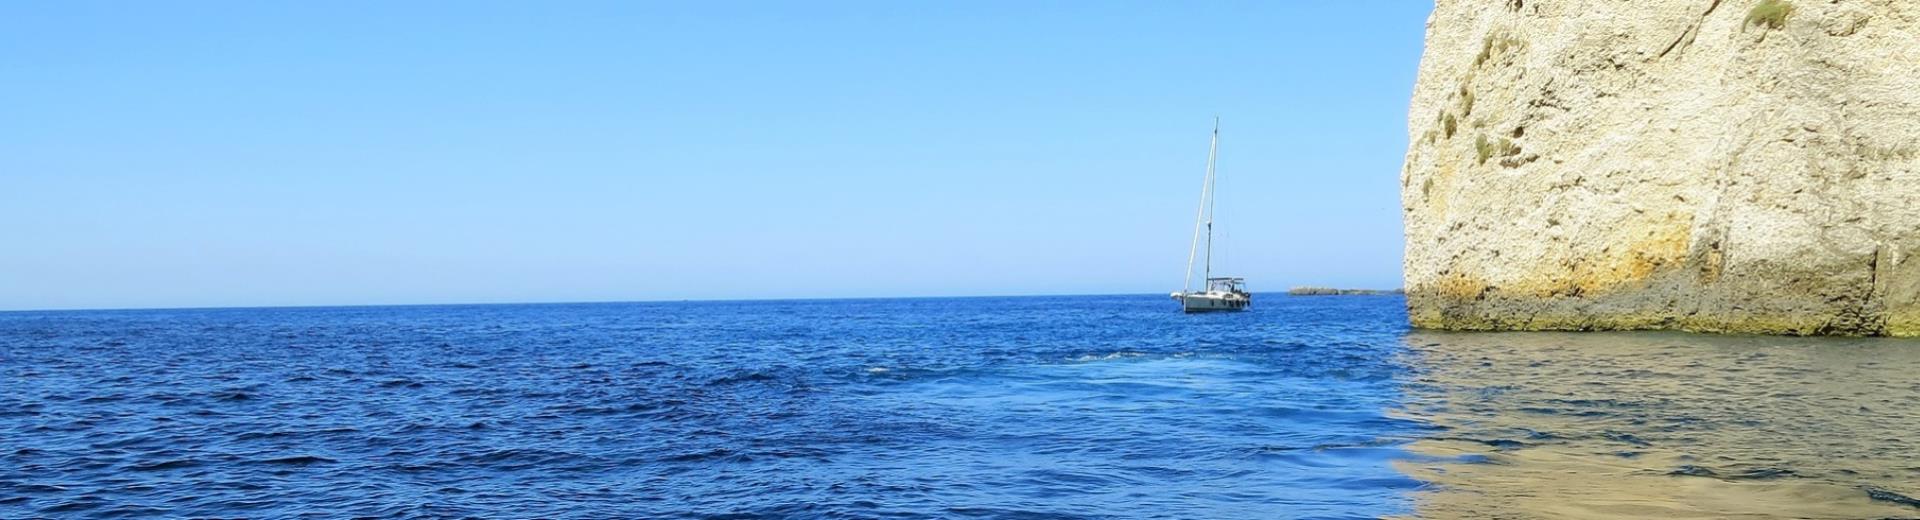 Trascorri una vacanza e goditi il mare di Catania al BW Hotel Mediterraneo